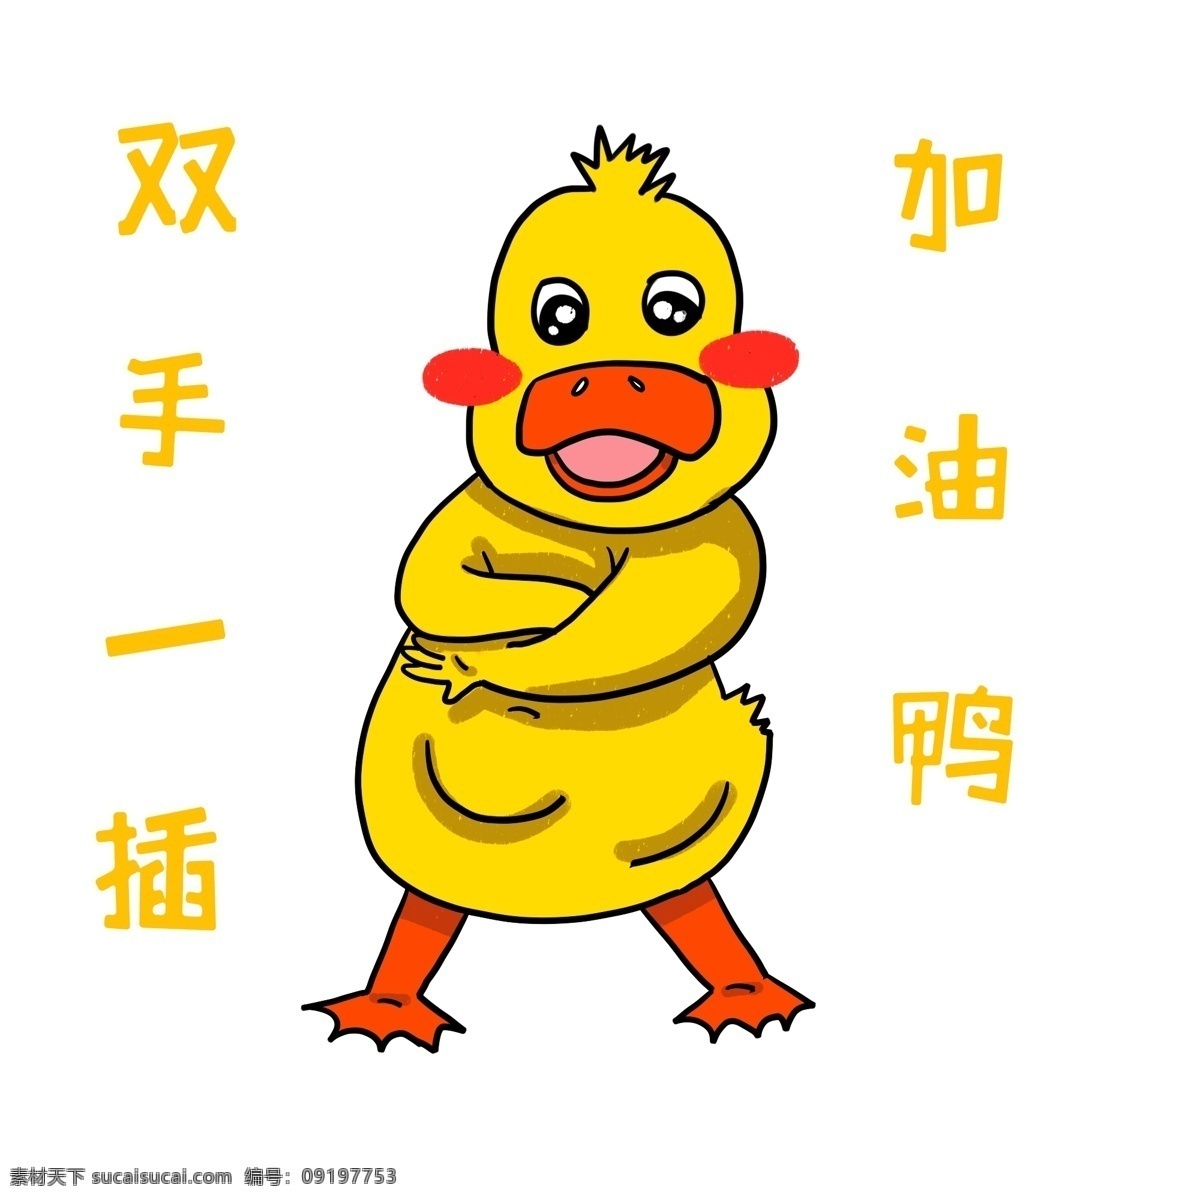 手绘 动物 加油 鸭子 插画 黄色的鸭子 卡通插画 手绘动物插画 加油的鸭子 插手的鸭子 创意鸭子插画